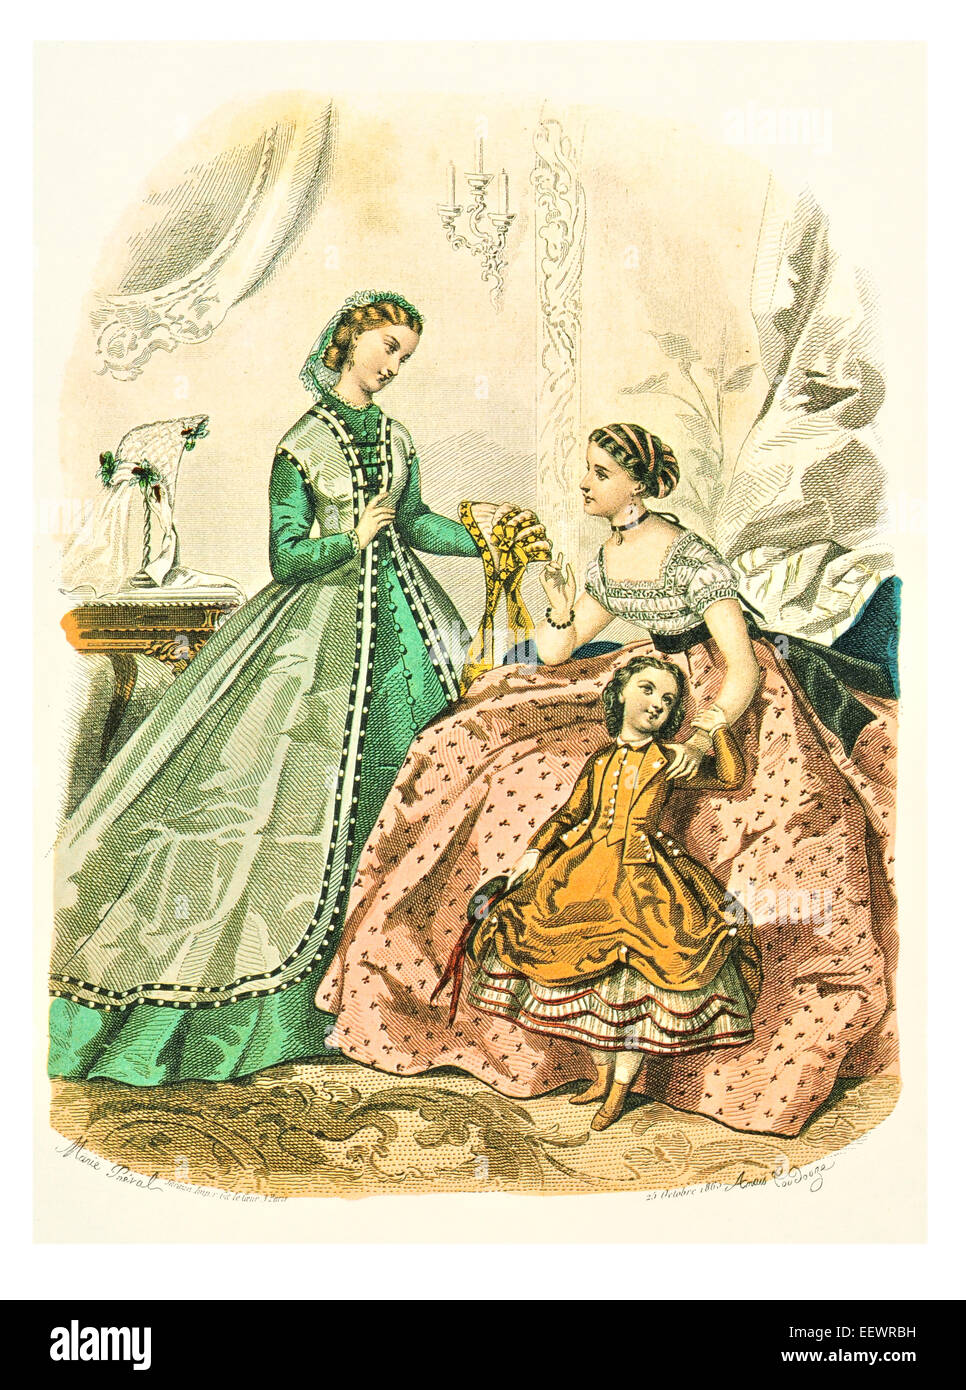 La Mode Illustree 1863 trajes de época victoriana moda vestido vestidos vestido falda velo cuff lujos tapa muselina bordado Foto de stock